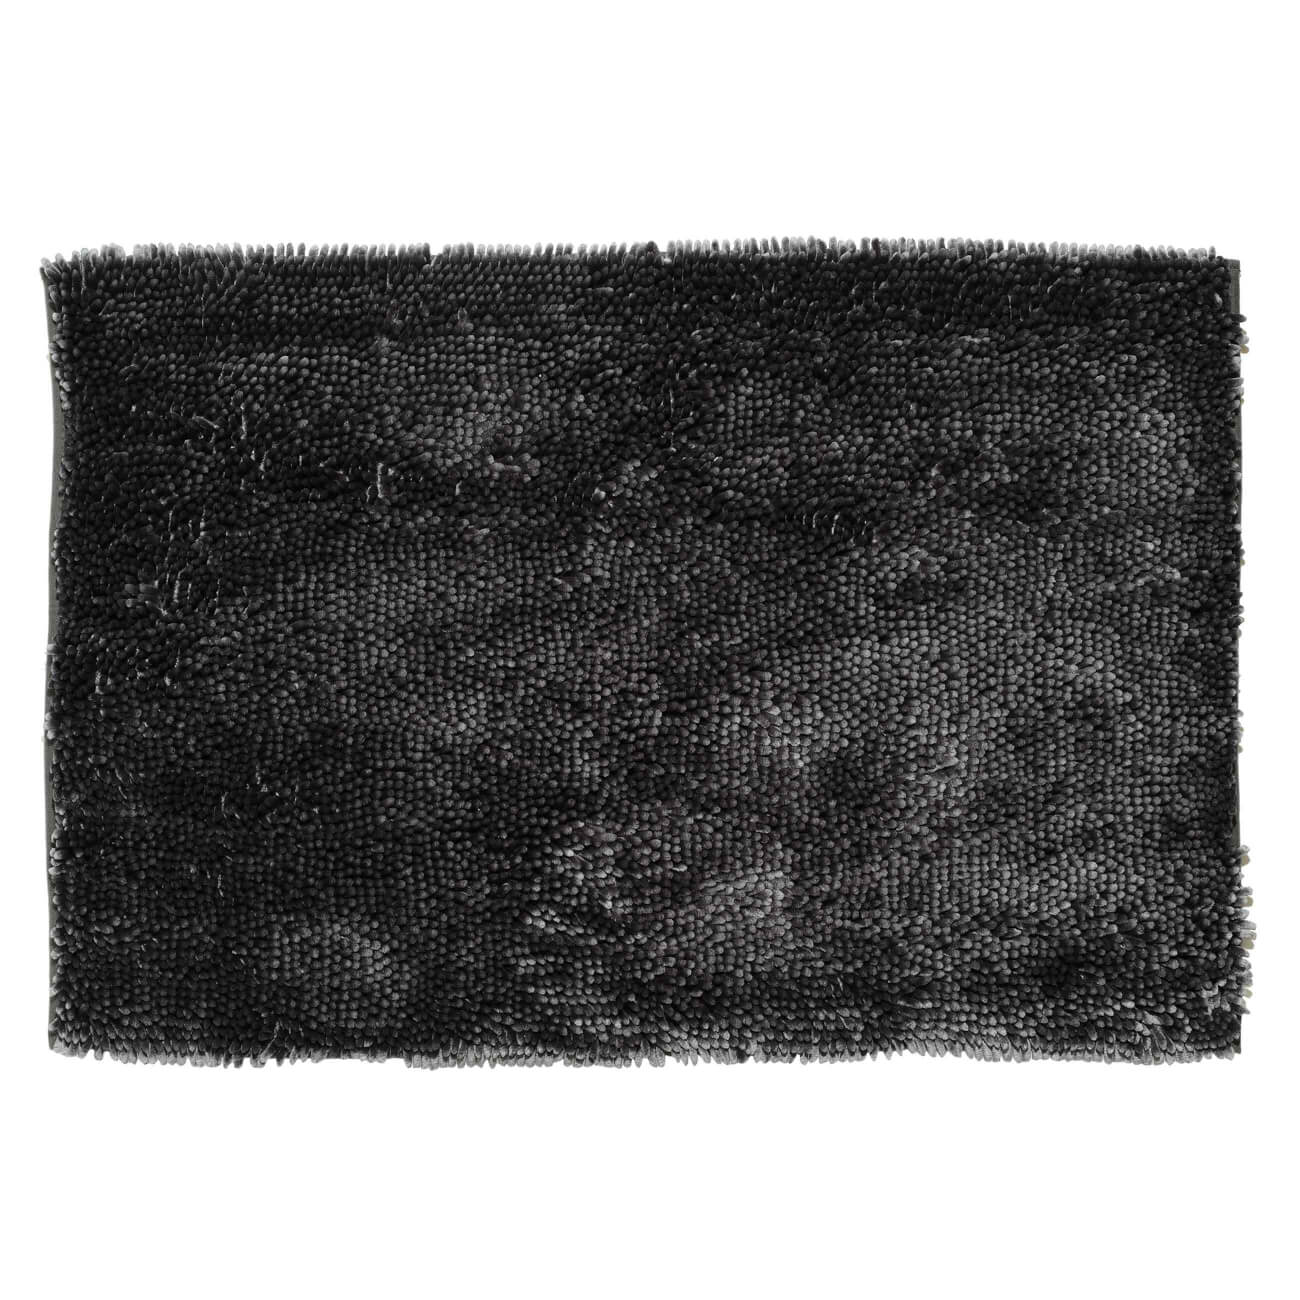 Коврик, 65х100 см, противоскользящий, полиэстер, темно-серый, Fluffy садовый коврик